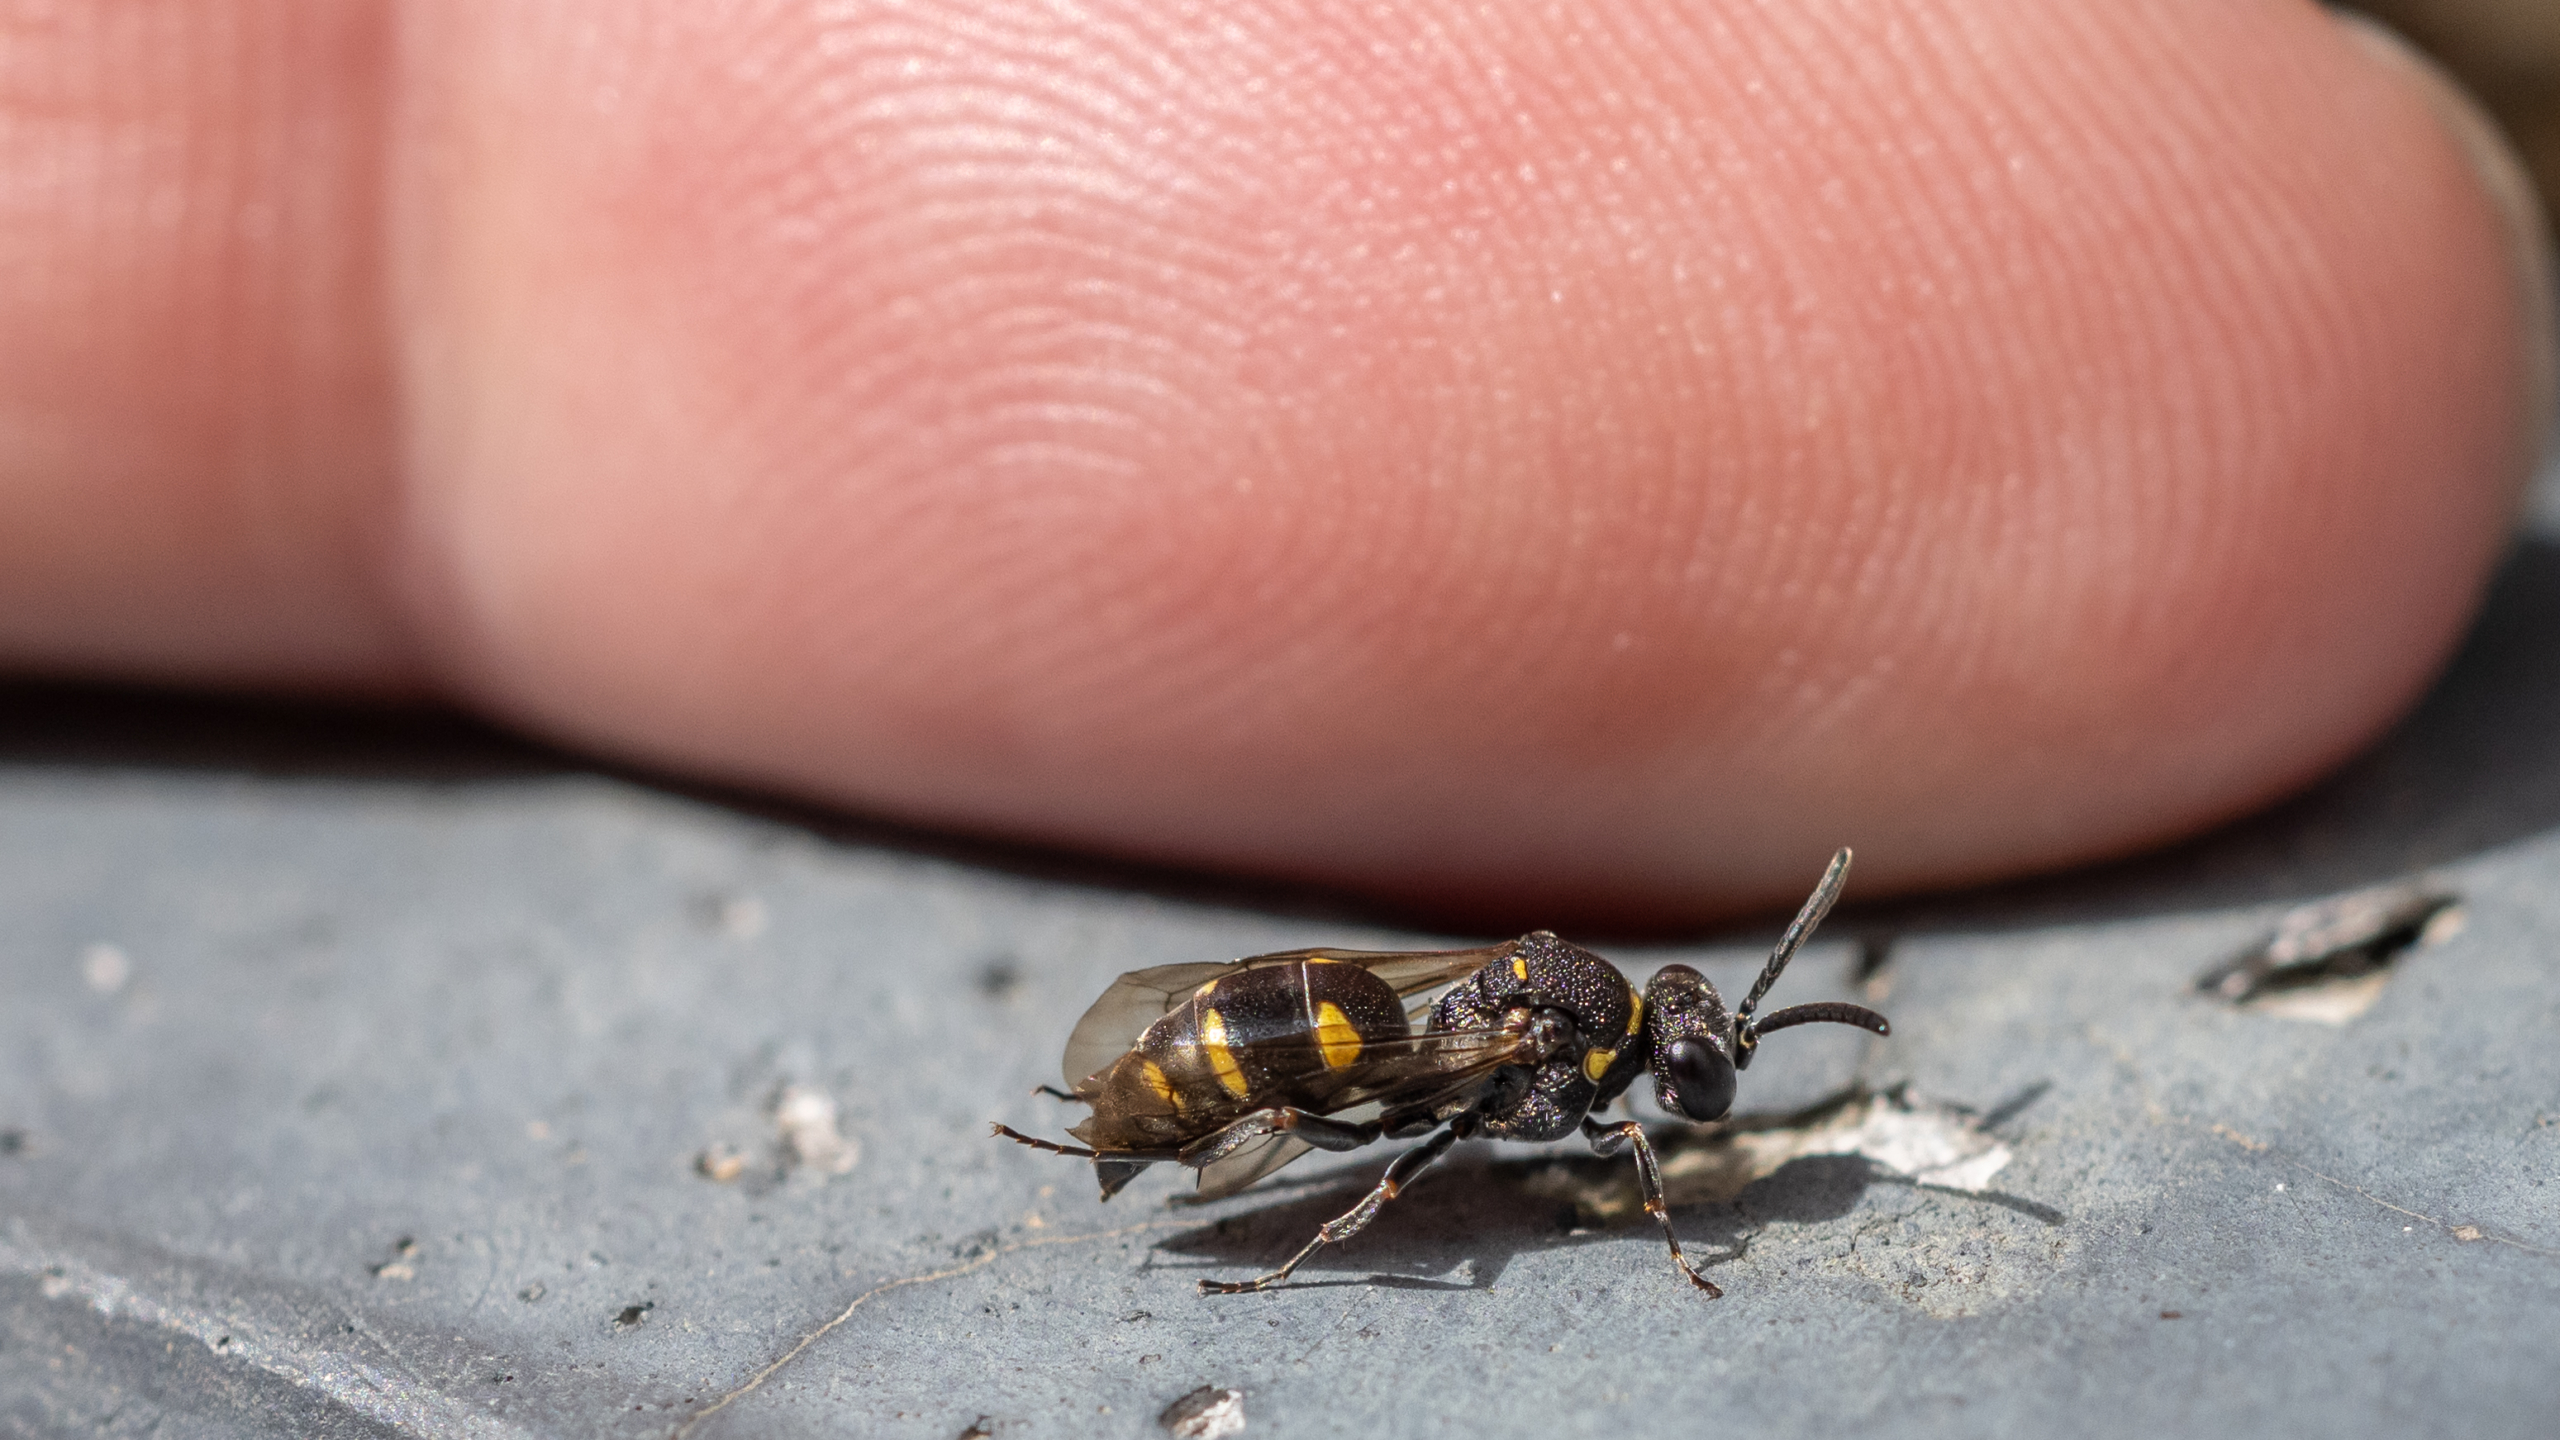 Kleine Tiere ganz groß
Zutrauliche junge Wespe